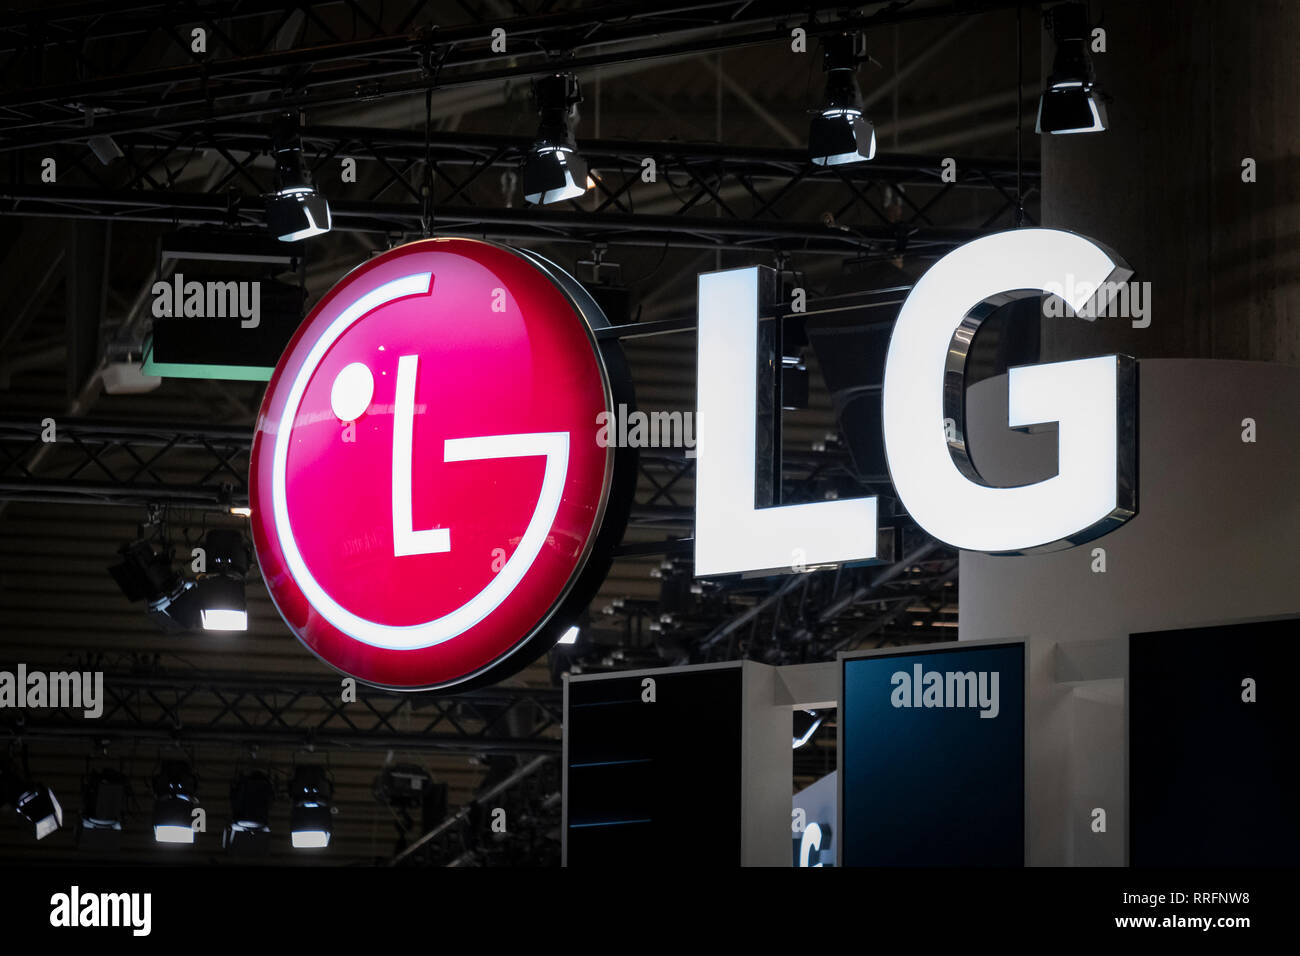 El logo de LG es visto durante el MWC 2019. El MWC2019 Mobile World Congress abre sus puertas para mostrar las últimas noticias de los fabricantes de teléfonos inteligentes. La presencia de dispositivos preparados para gestionar las comunicaciones de 5G ha sido el distintivo de esta edición. Foto de stock